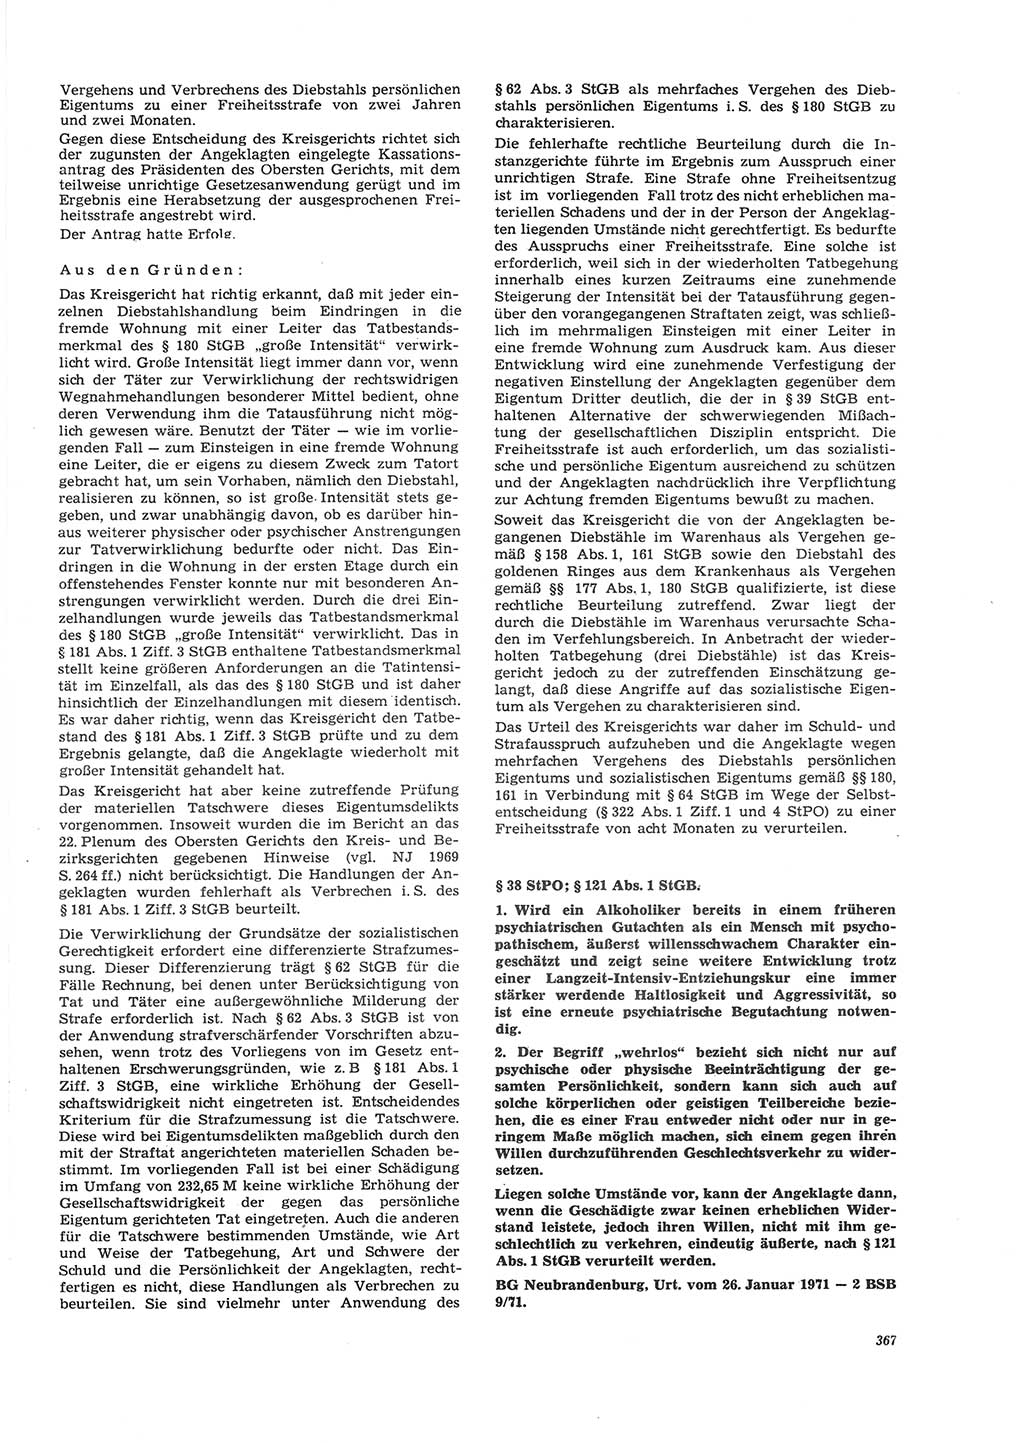 Neue Justiz (NJ), Zeitschrift für Recht und Rechtswissenschaft [Deutsche Demokratische Republik (DDR)], 26. Jahrgang 1972, Seite 367 (NJ DDR 1972, S. 367)